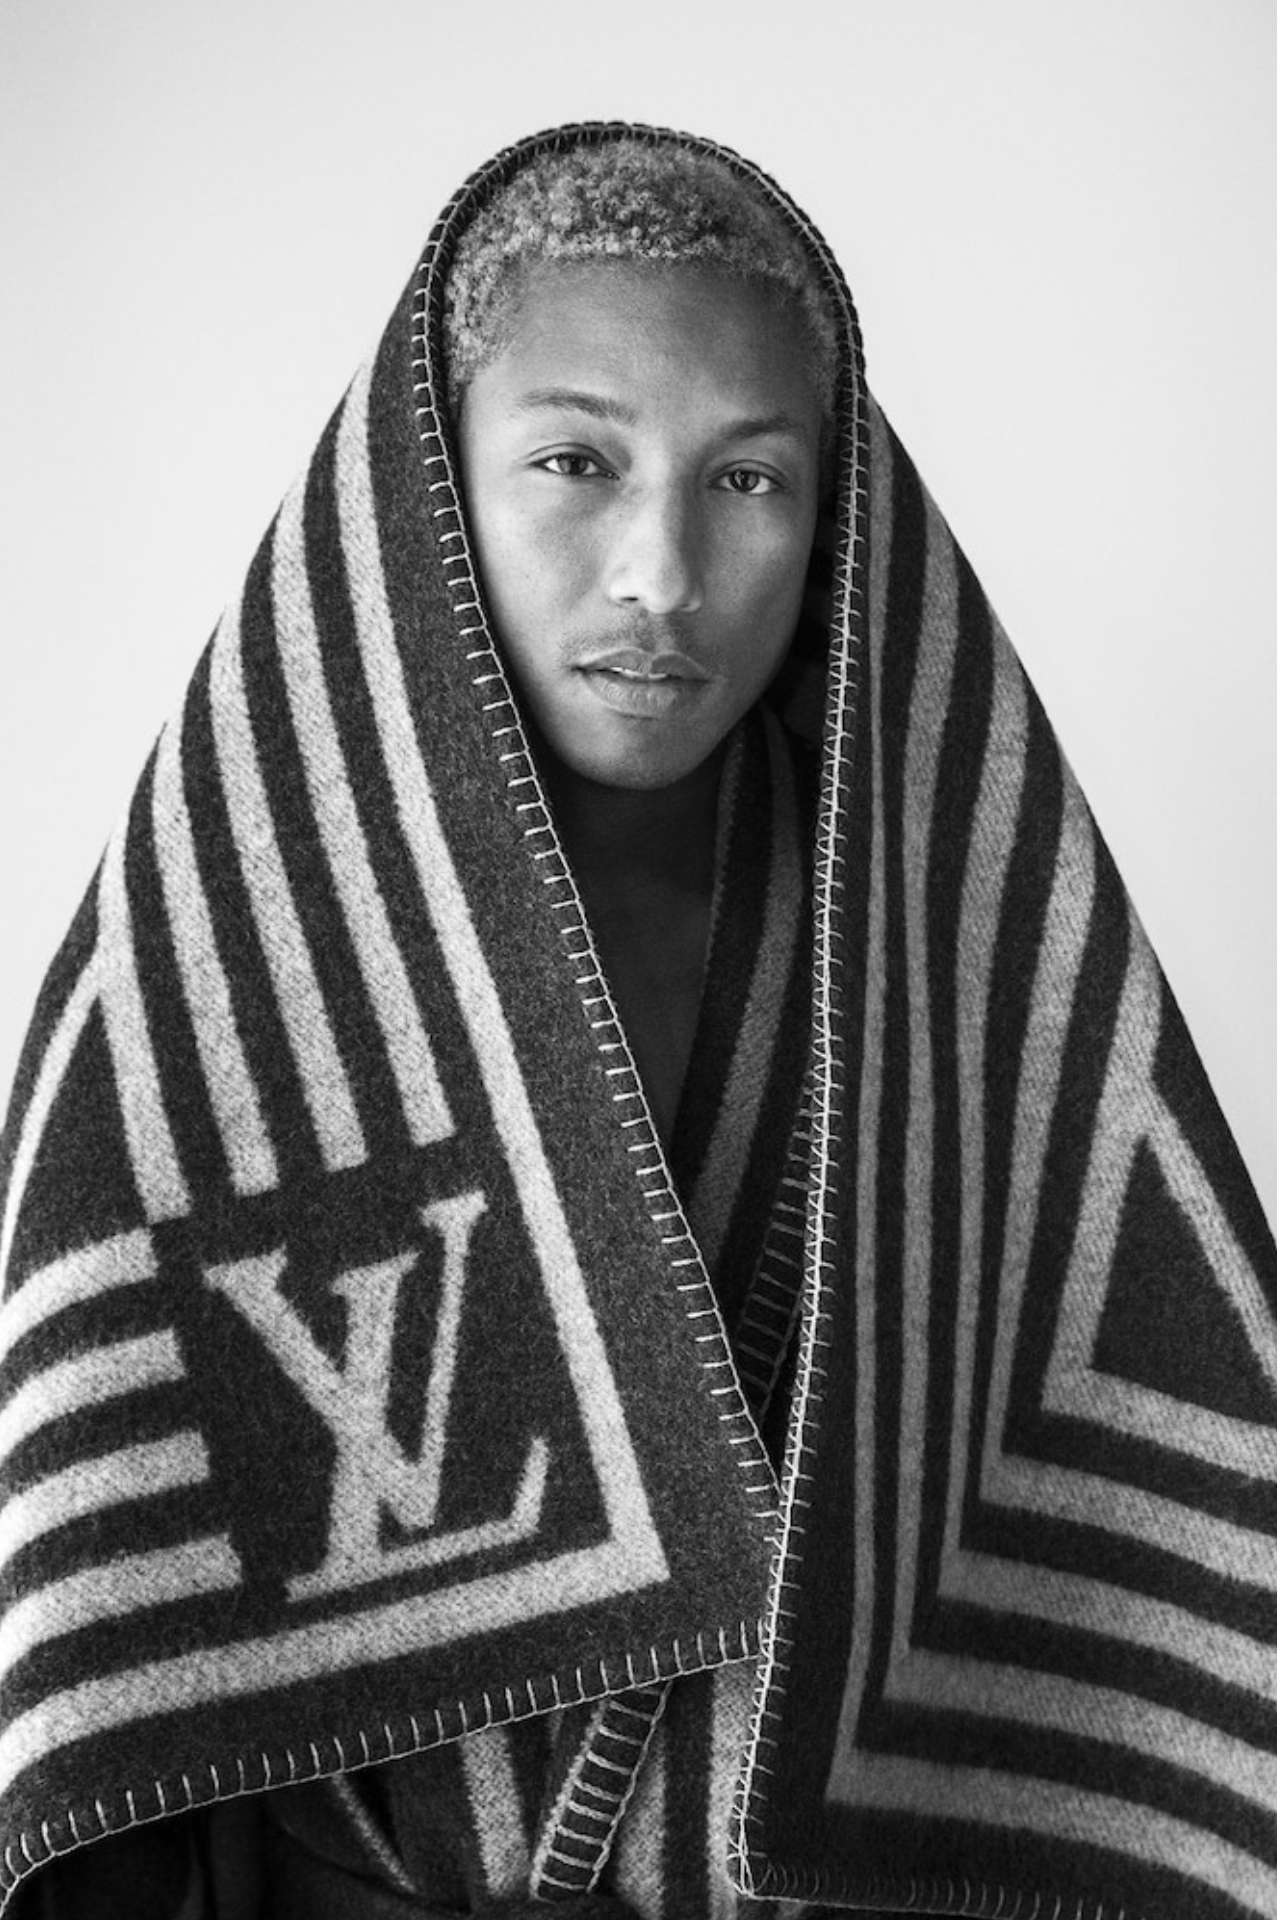 El debut apoteósico de Pharrell en Louis Vuitton, el club de moda